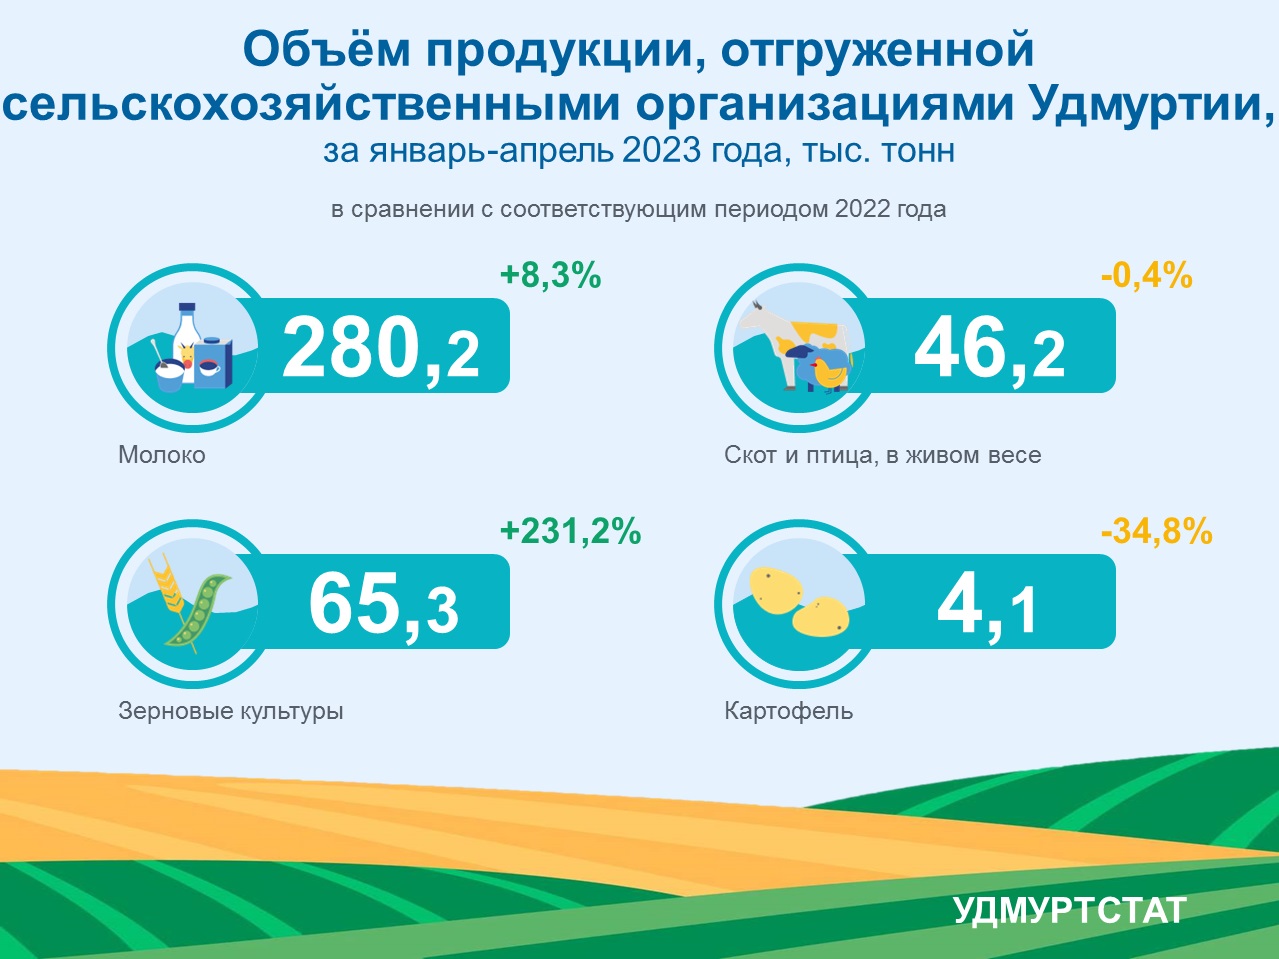 Объём продукции, отгруженной сельскохозяйственными организациями Удмуртии за январь-апрель 2023 года.